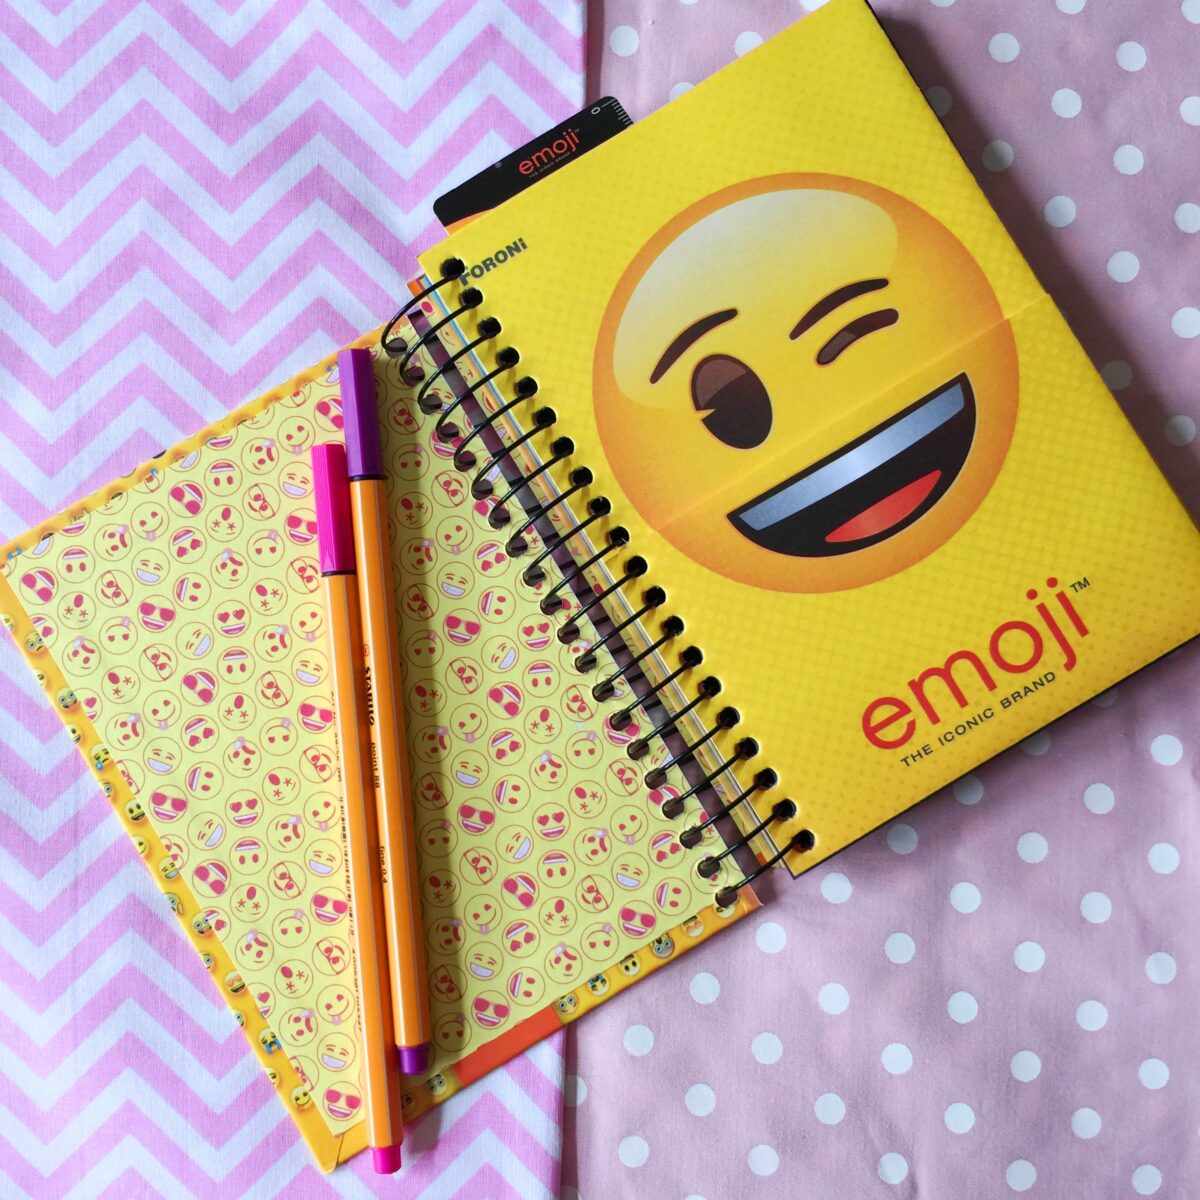 Quem aqui também adora usar um emoji?! 😂